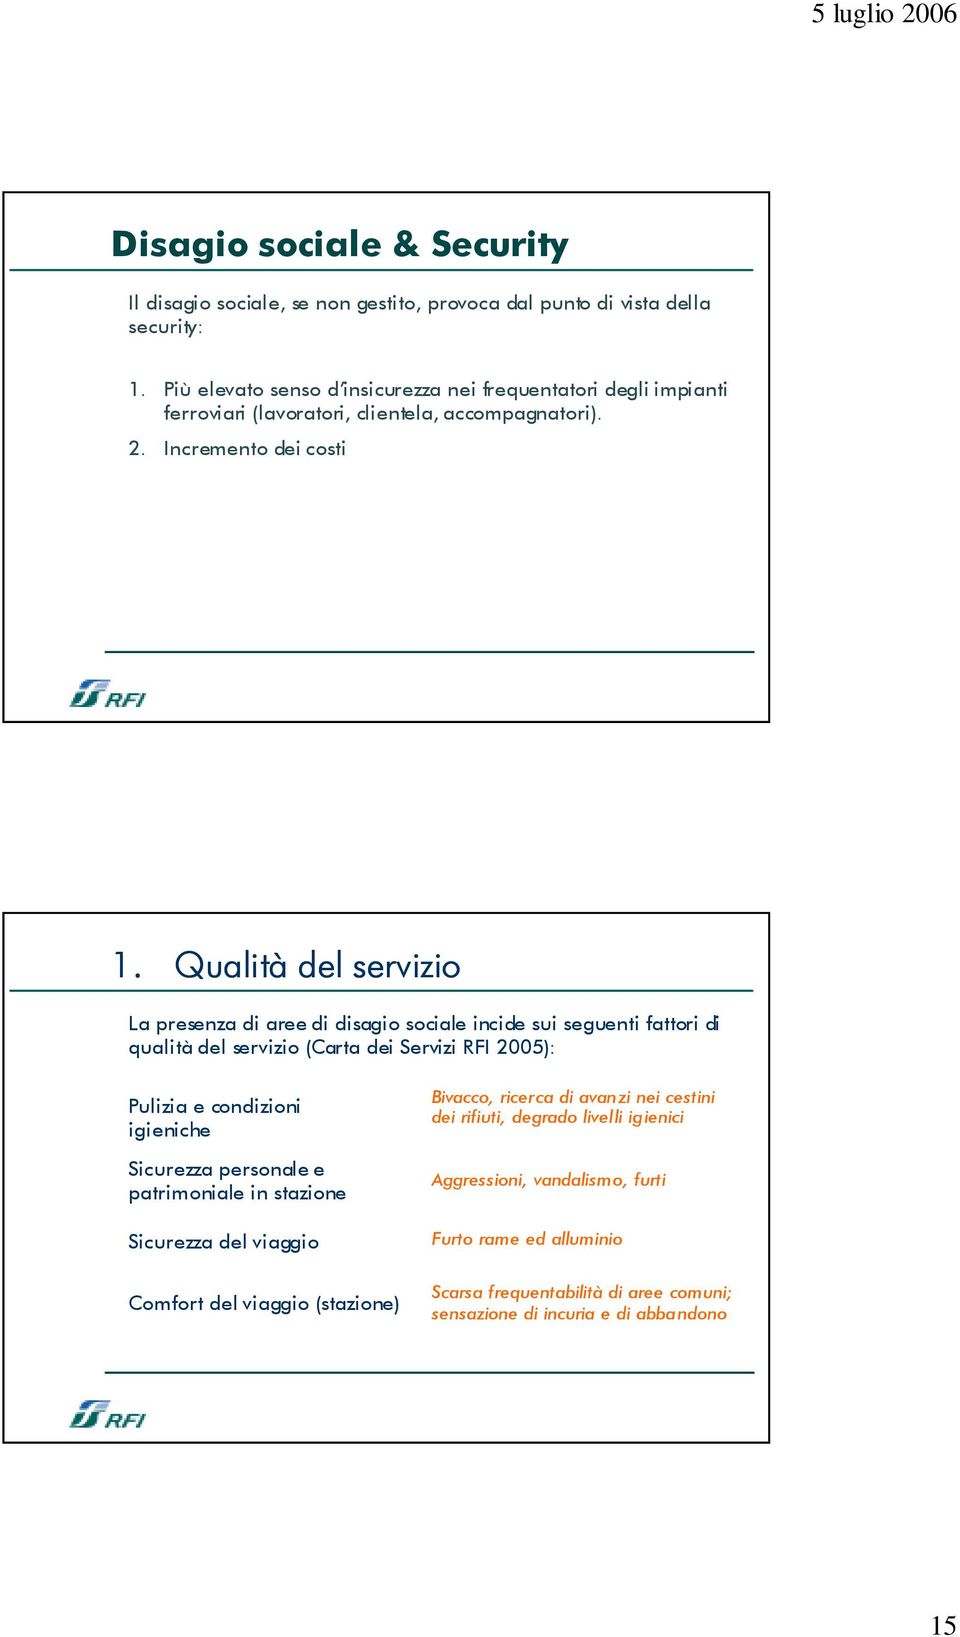 Qualità del servizio La presenza di aree di disagio sociale incide sui seguenti fattori di qualità del servizio (Carta dei Servizi RFI 2005): Pulizia e condizioni igieniche Sicurezza